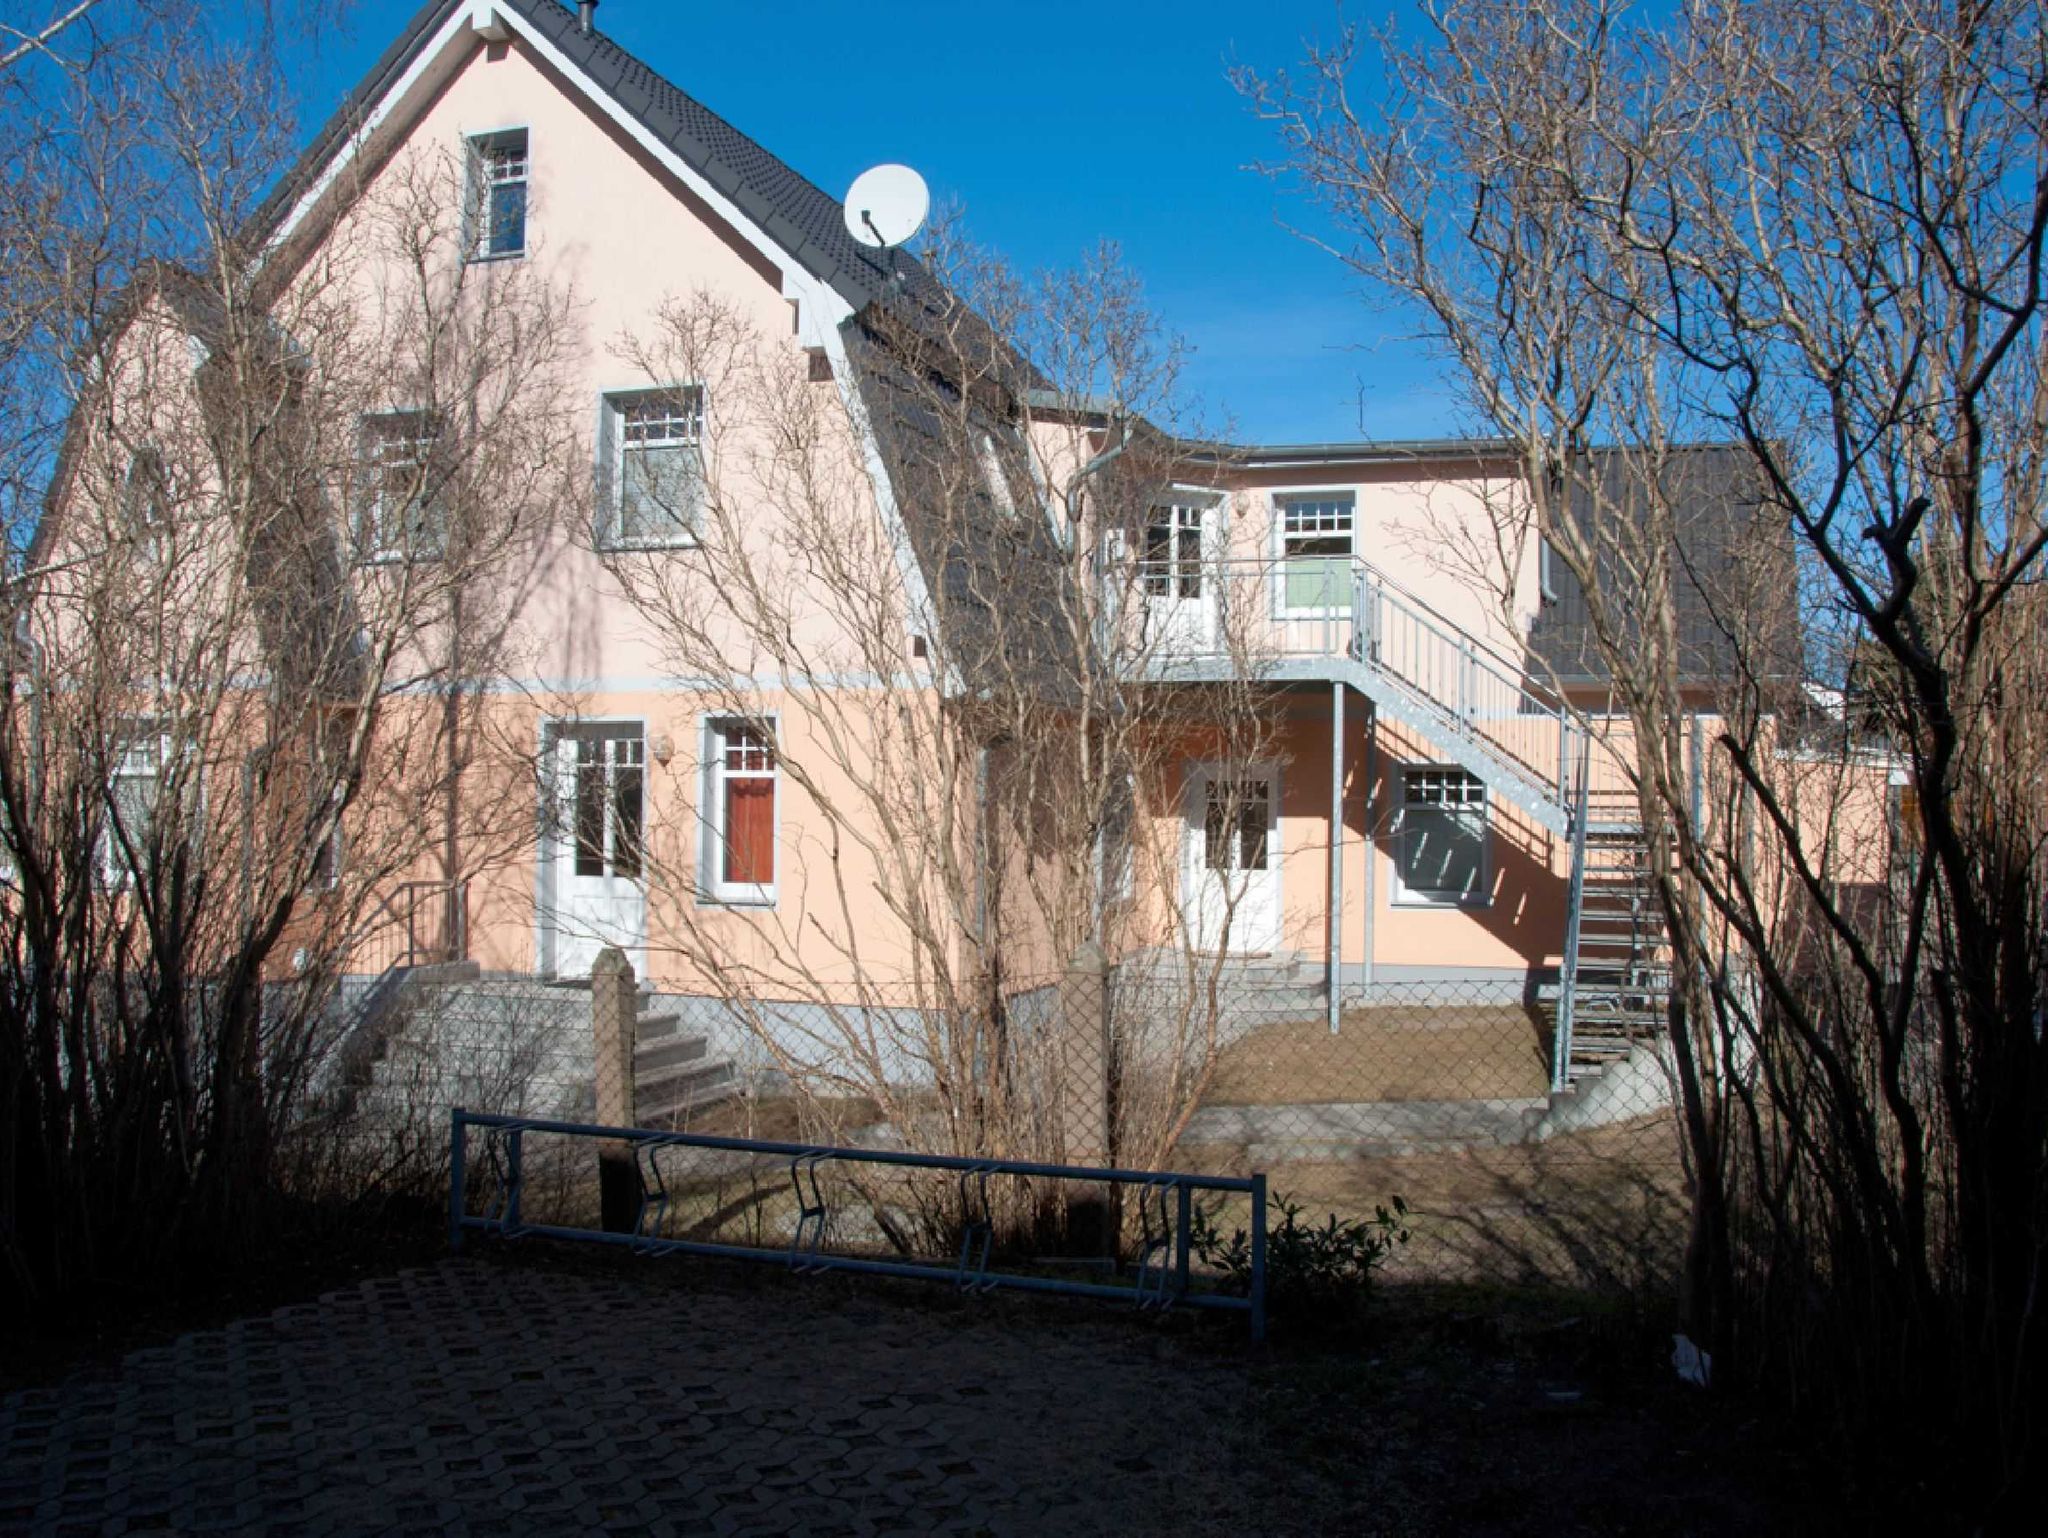 Ferienappartements auf dem Reddevitzer Hövt mit Seeblick